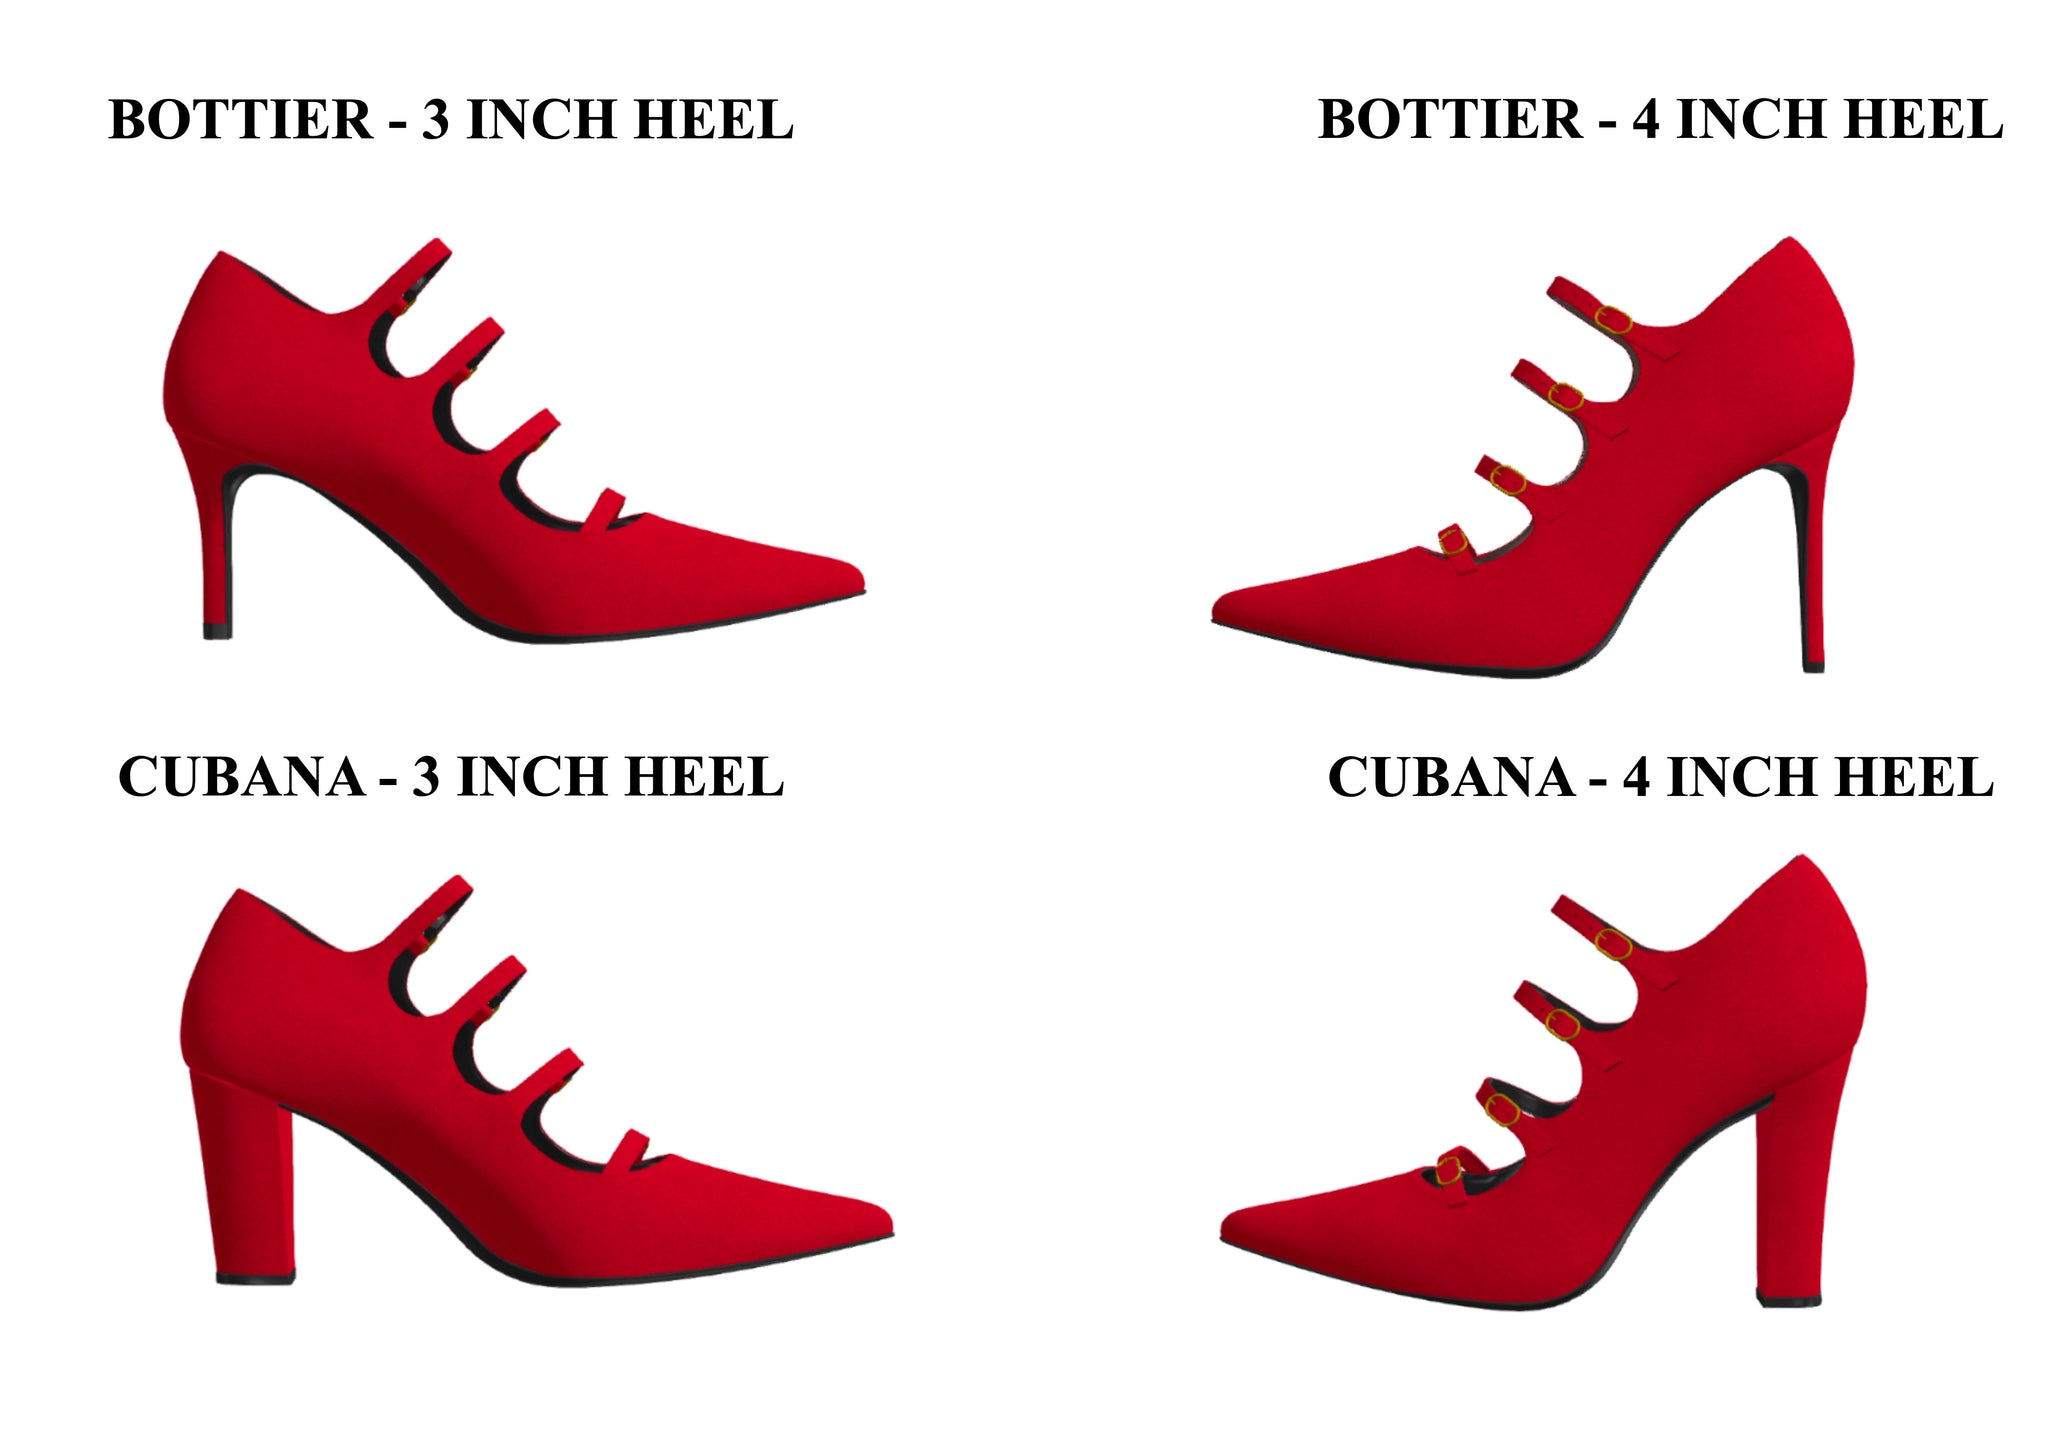 Rock & Republic Stiletto Heels, Blue Suede, Size 6, 4 inch heel. | eBay